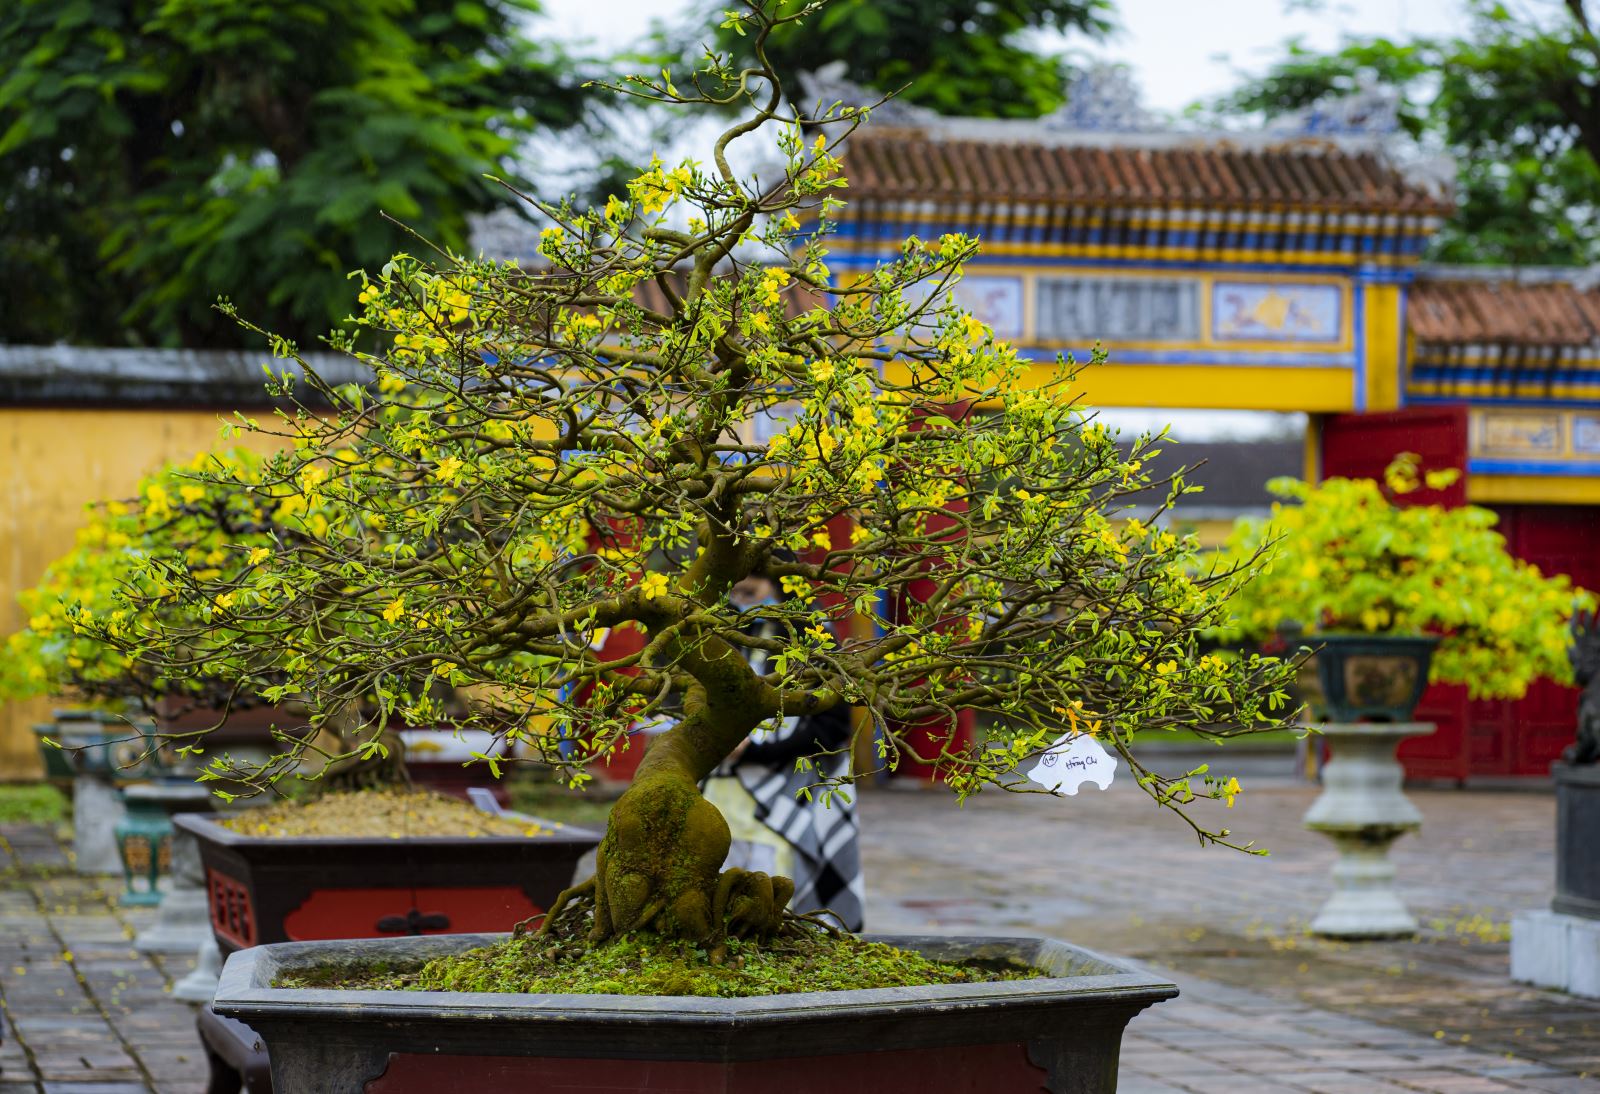 Hoàng mai Huế được trồng từ lâu đời ở cung đình… tạo nên vẻ đẹp sang trọng, trở thành một biểu tượng sắc xuân của thiên nhiên và con người Huế.